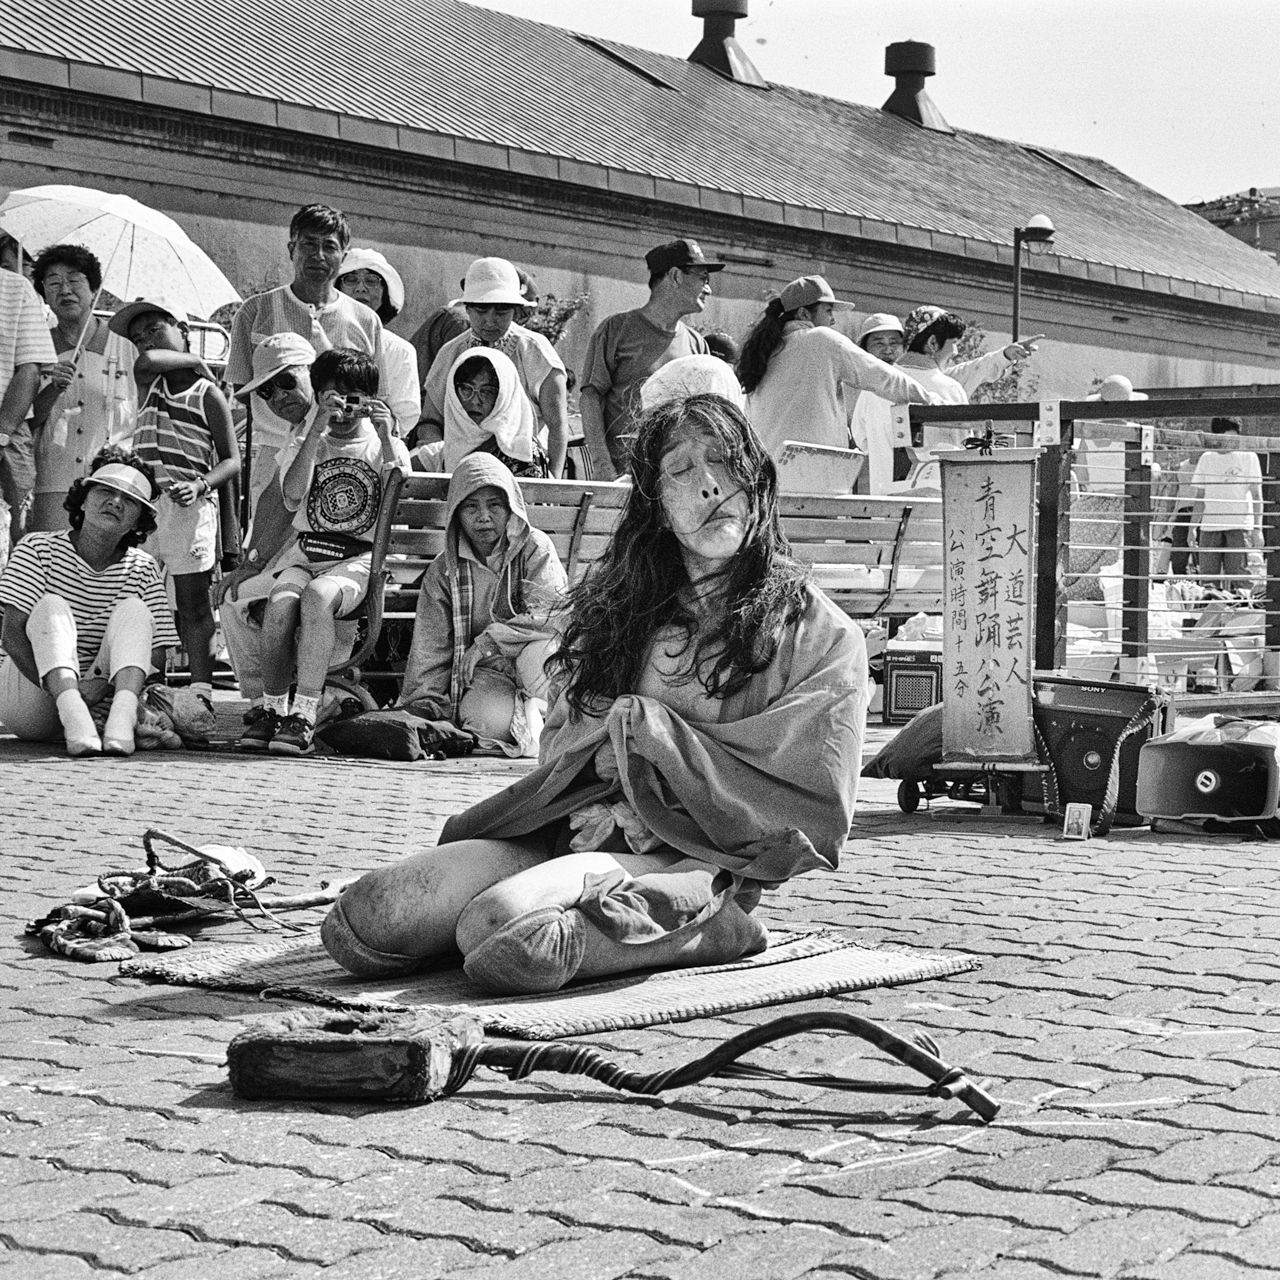 Gilyak interprète « Une vie à Jongara » (Jongara ichidai), une référence à la musique folklorique jongara du nord du Japon. (Baie de Hakodate, 1994) 